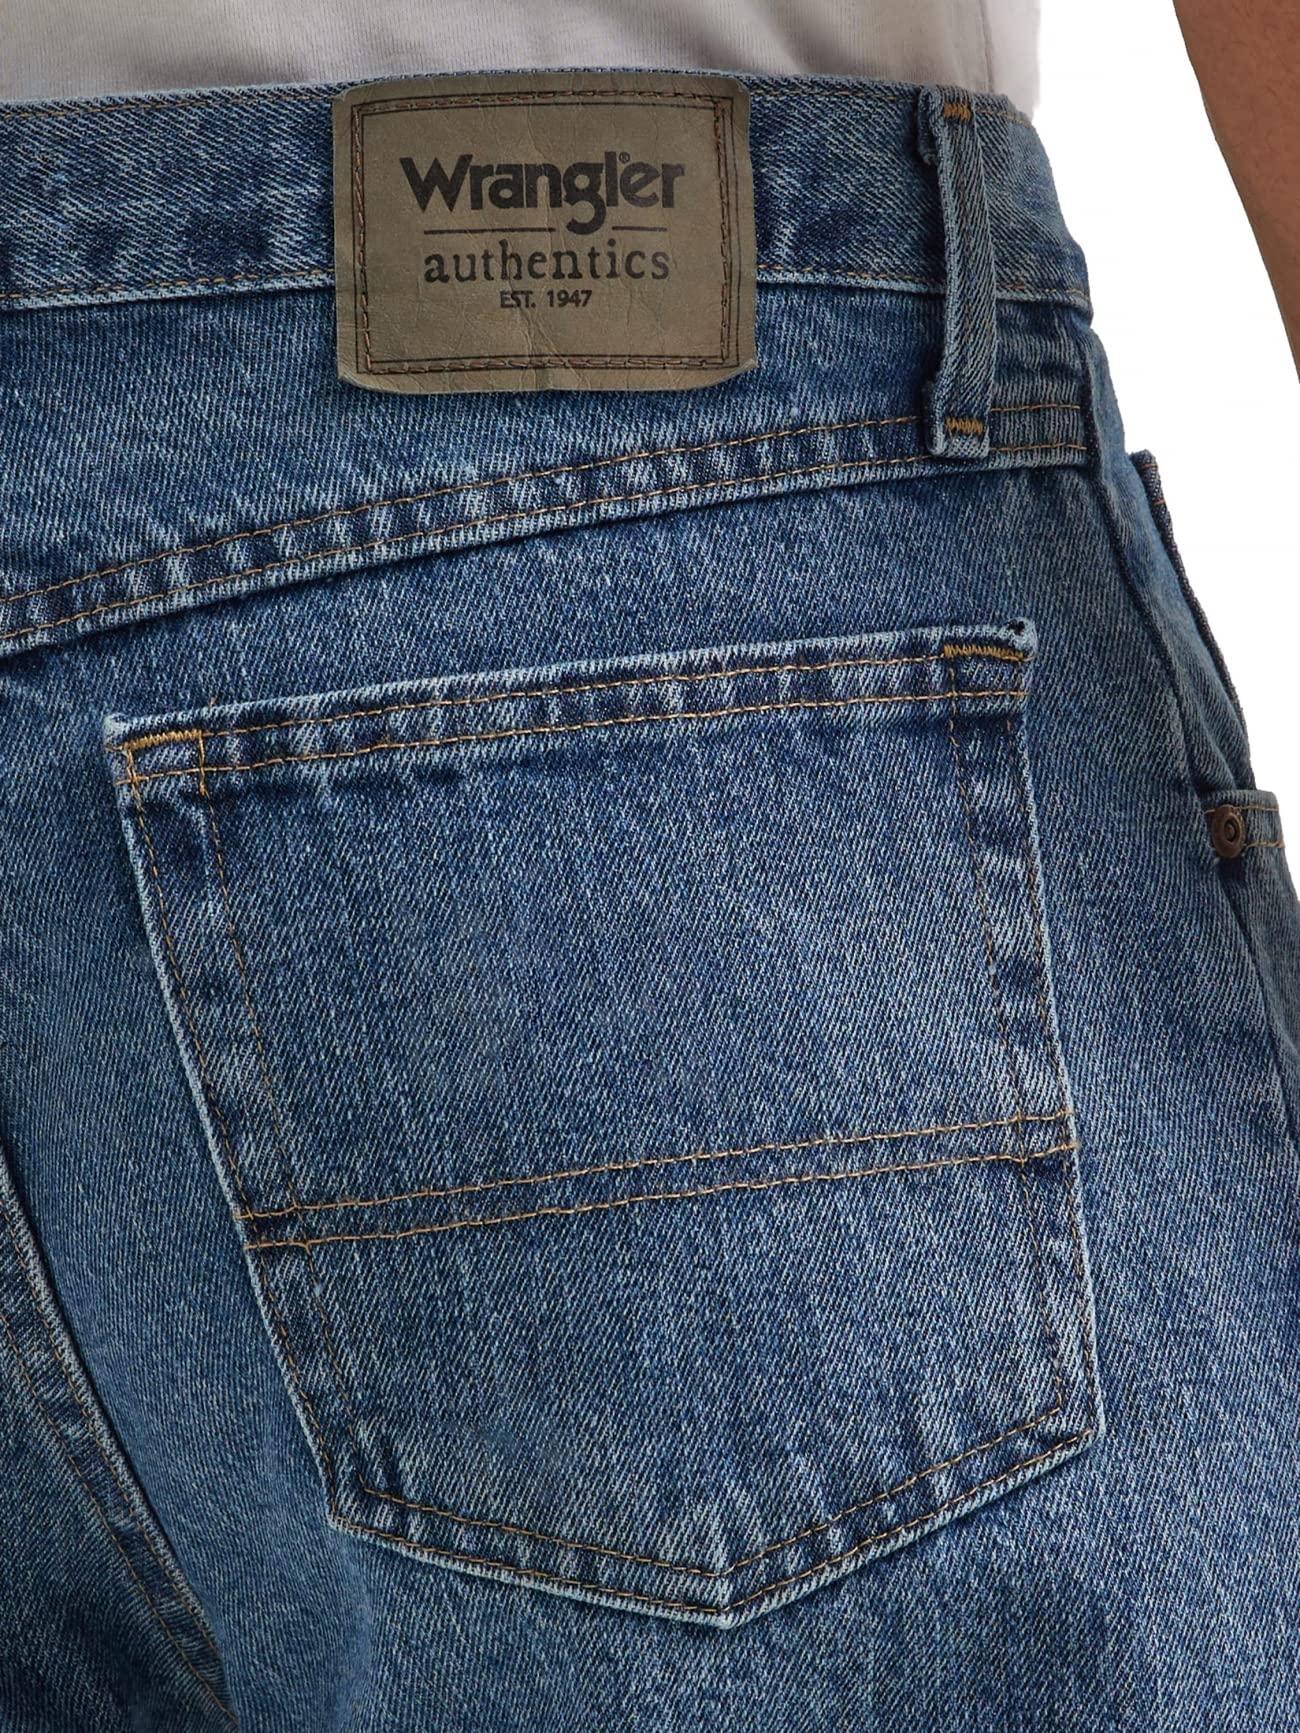 Wrangler Authentics Men's Classic 5-Pocket Regular Fit Cotton Jean, Vintage Blue Grey, 35W x 30L